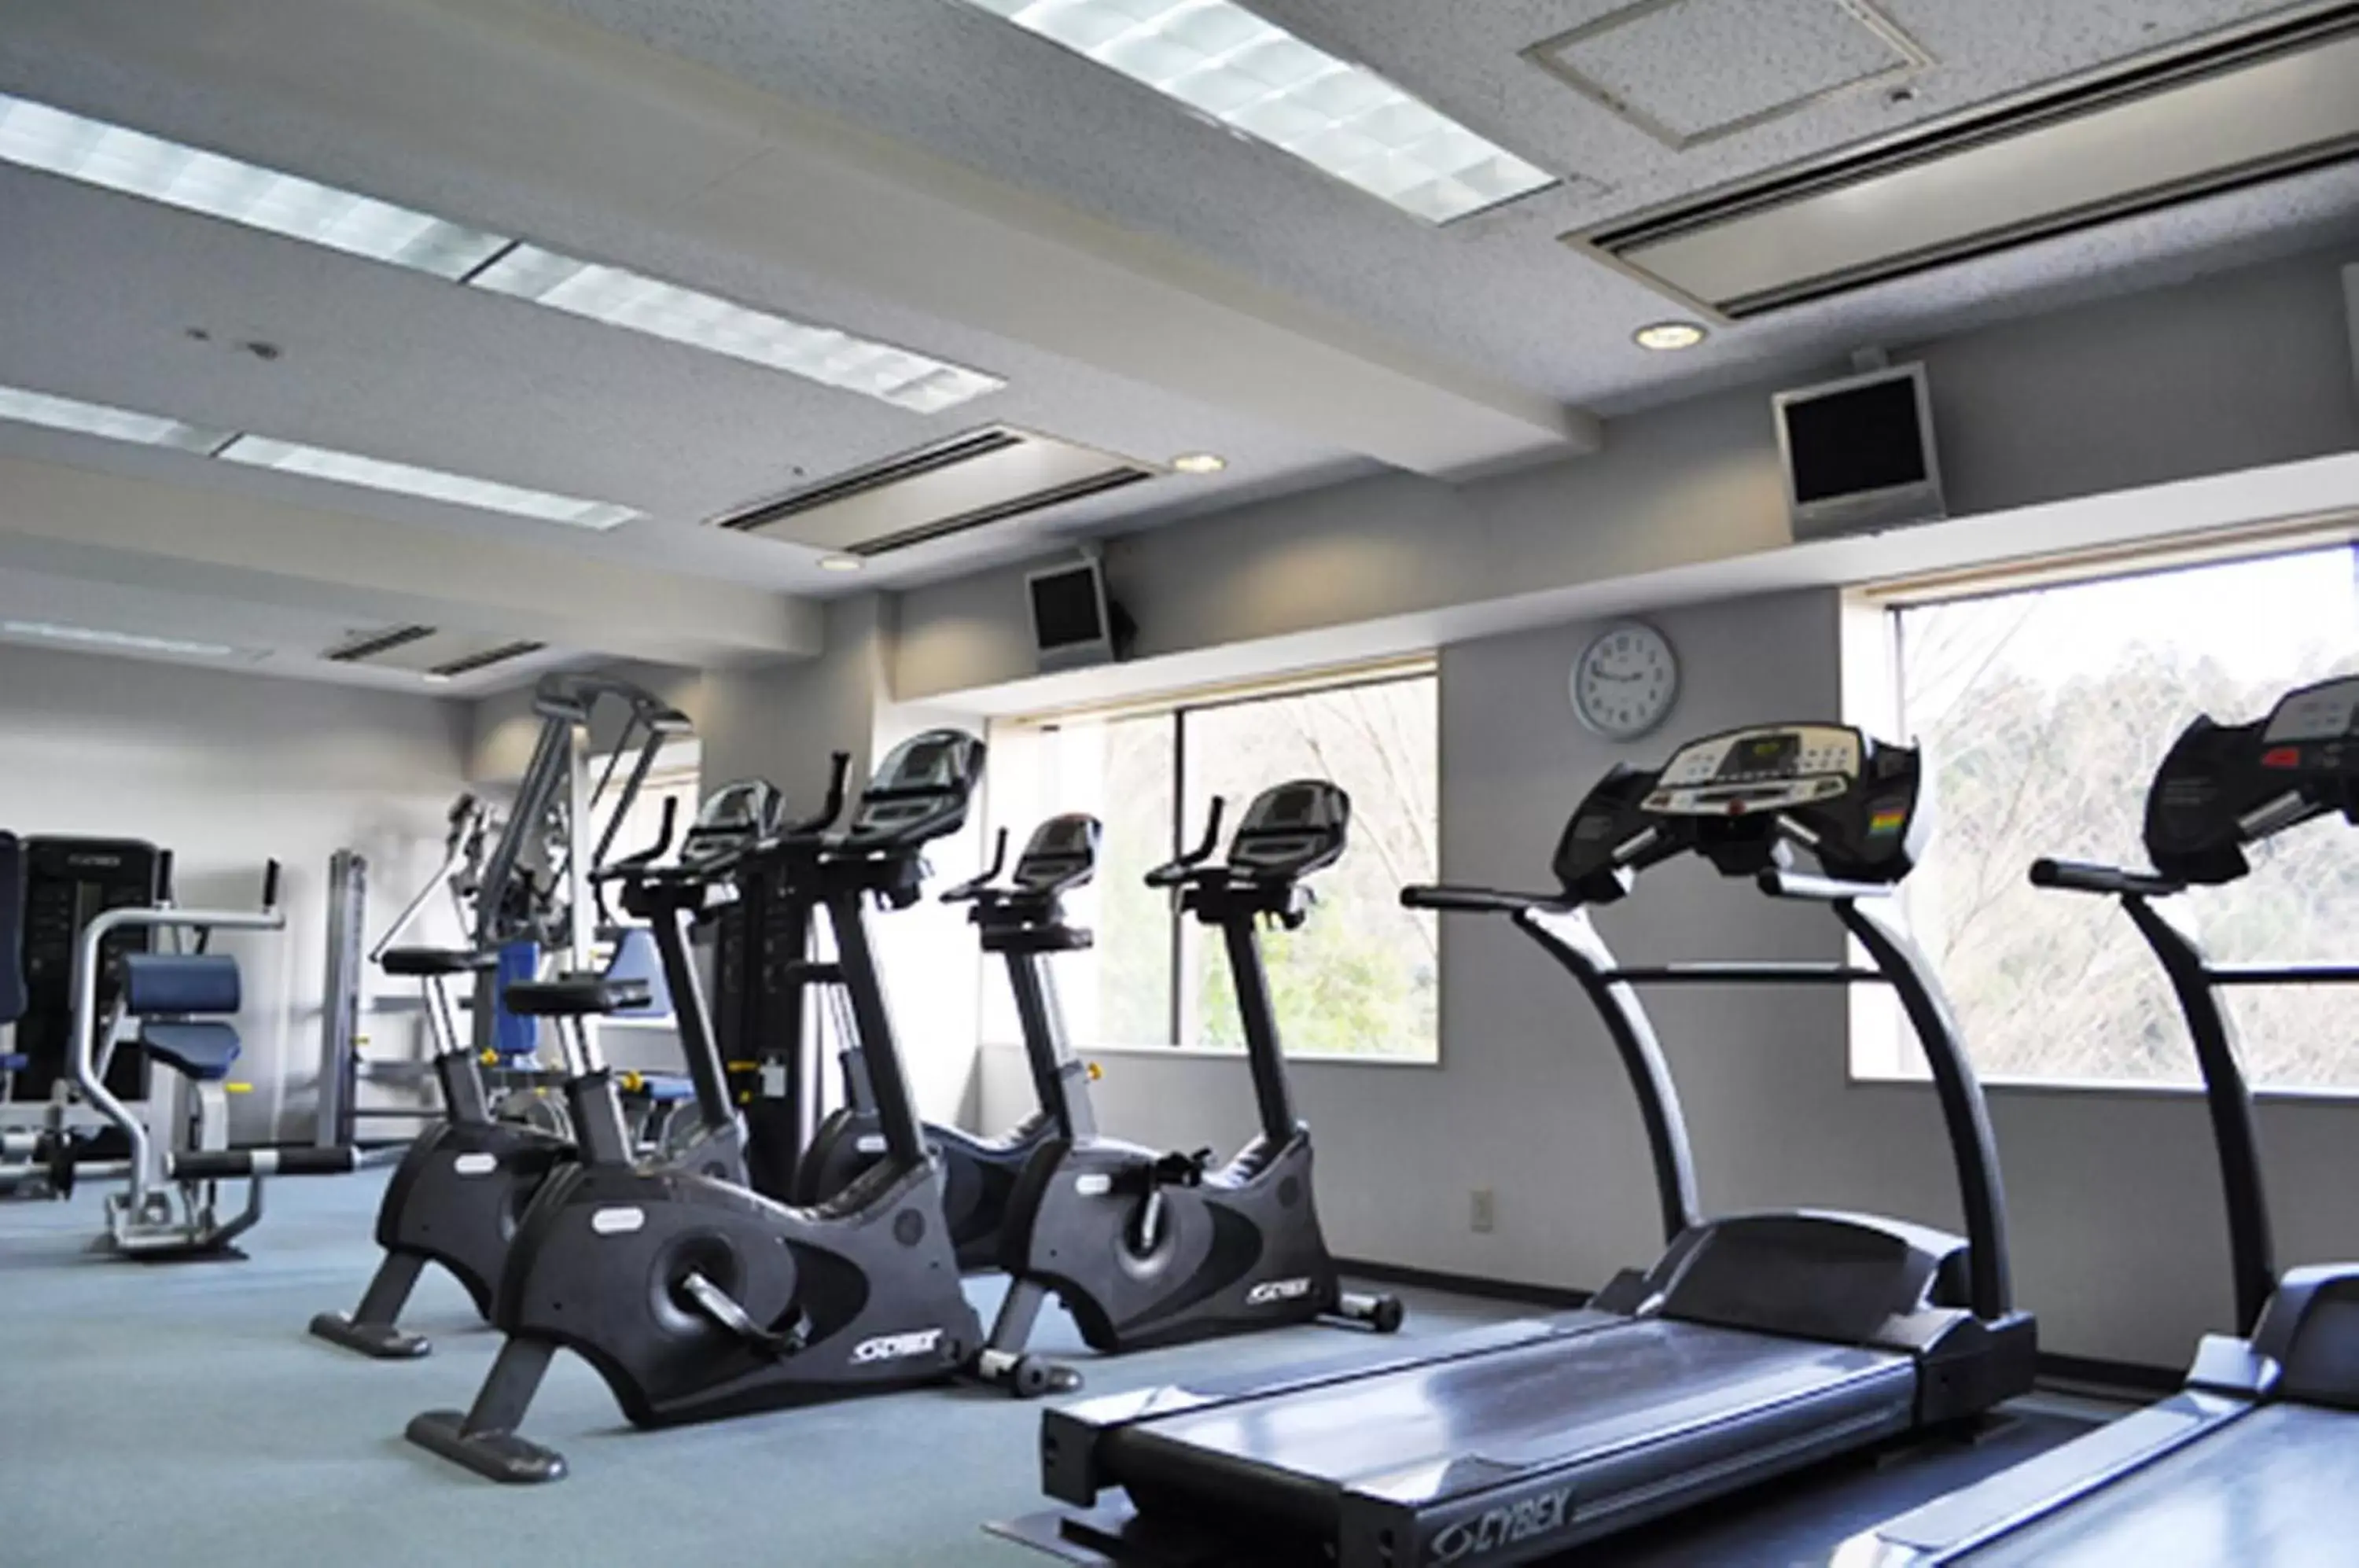 Fitness centre/facilities, Fitness Center/Facilities in International Garden Hotel Narita